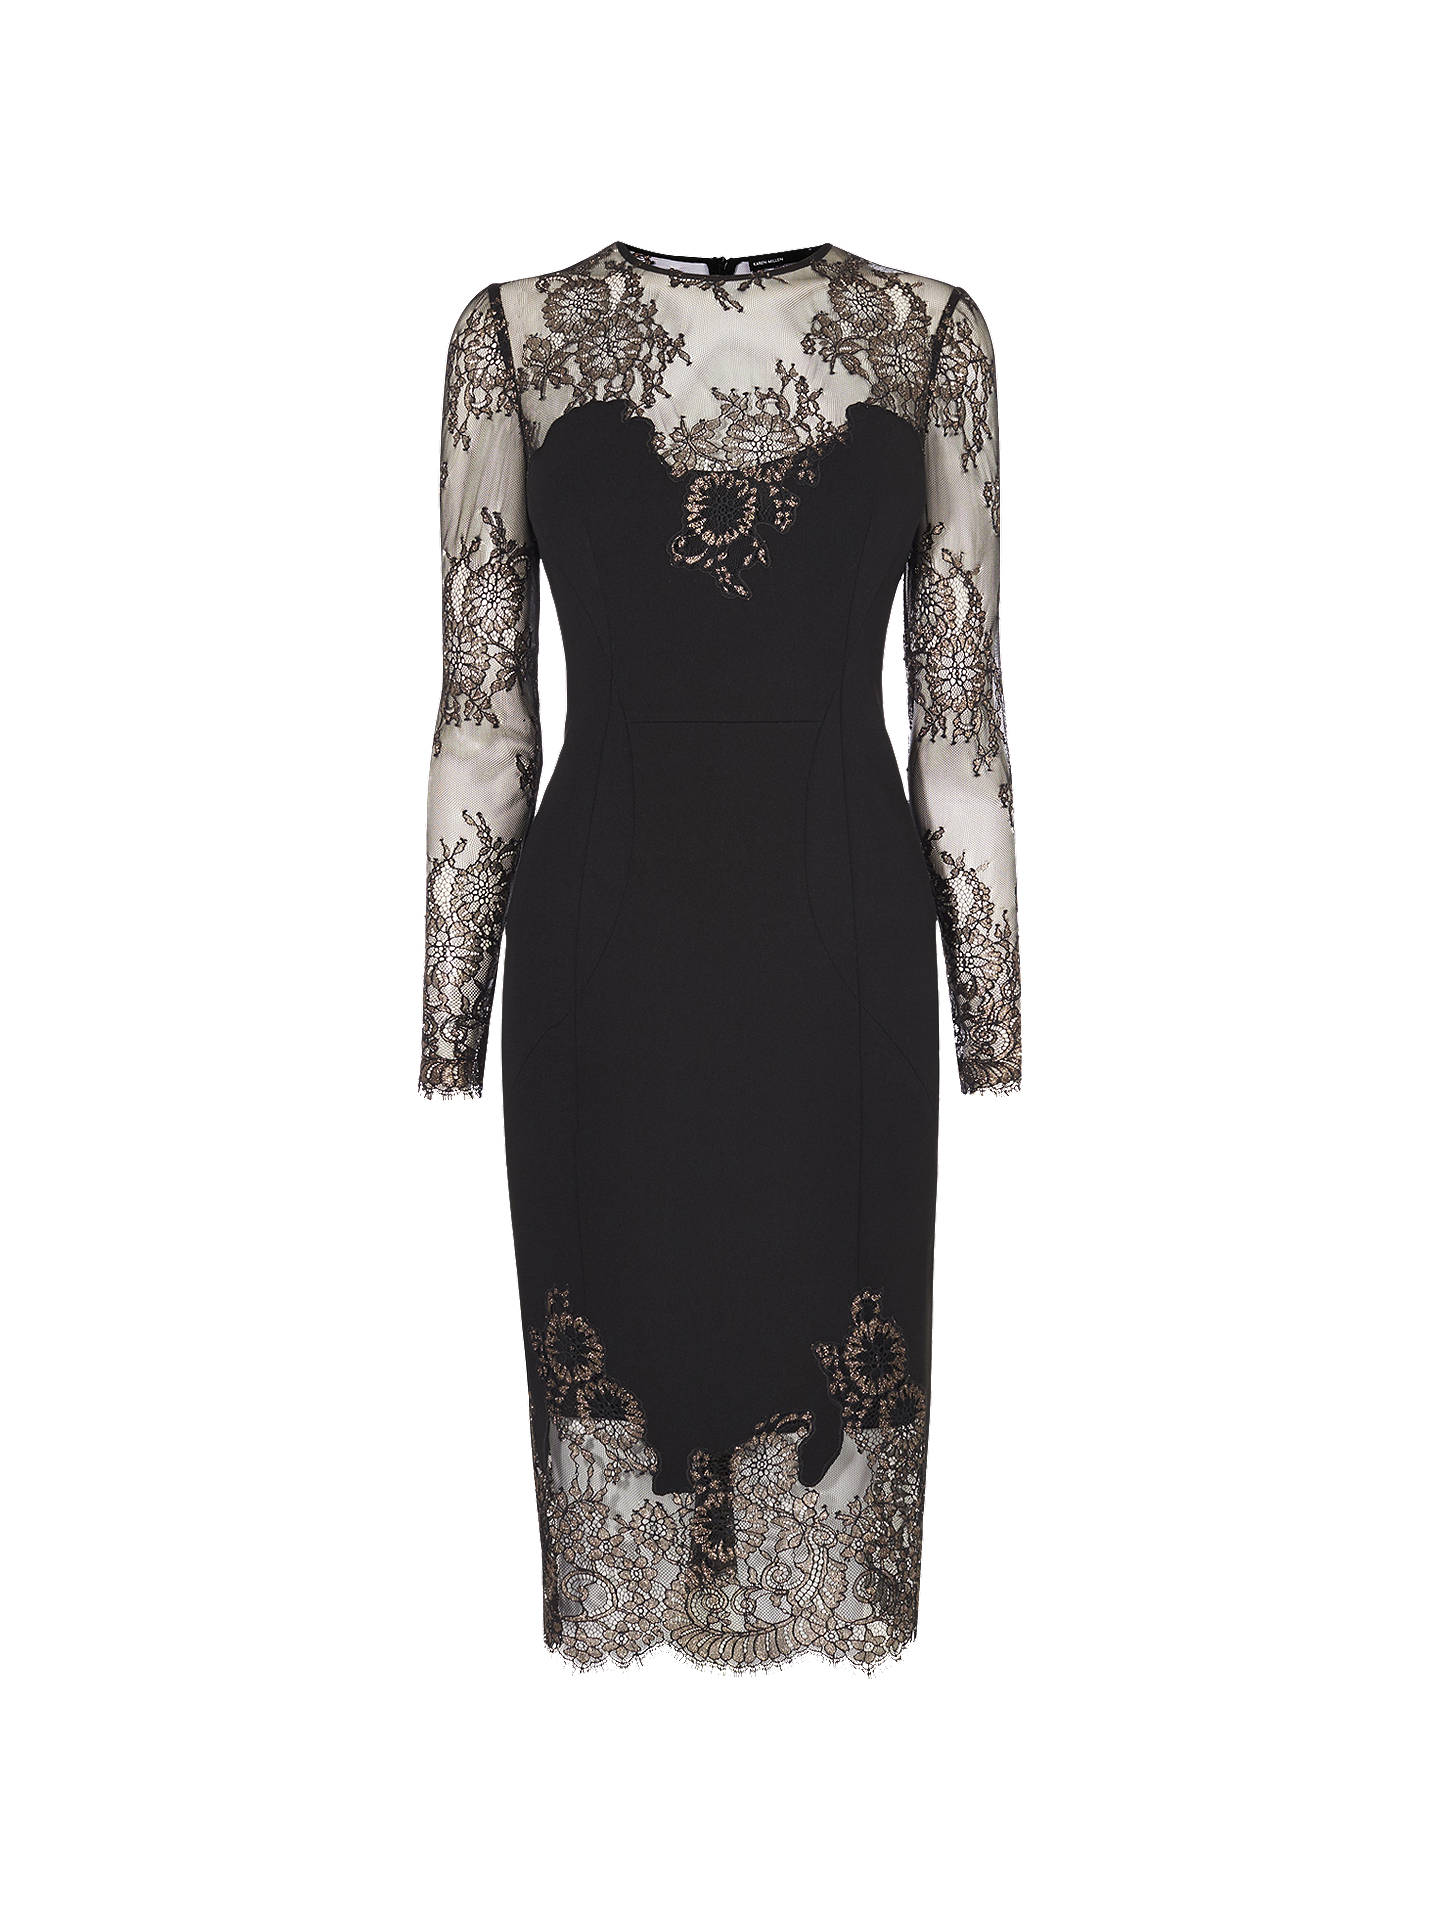 Karen Millen Metallic Lace Dress, Black/Multi at John Lewis & Partners